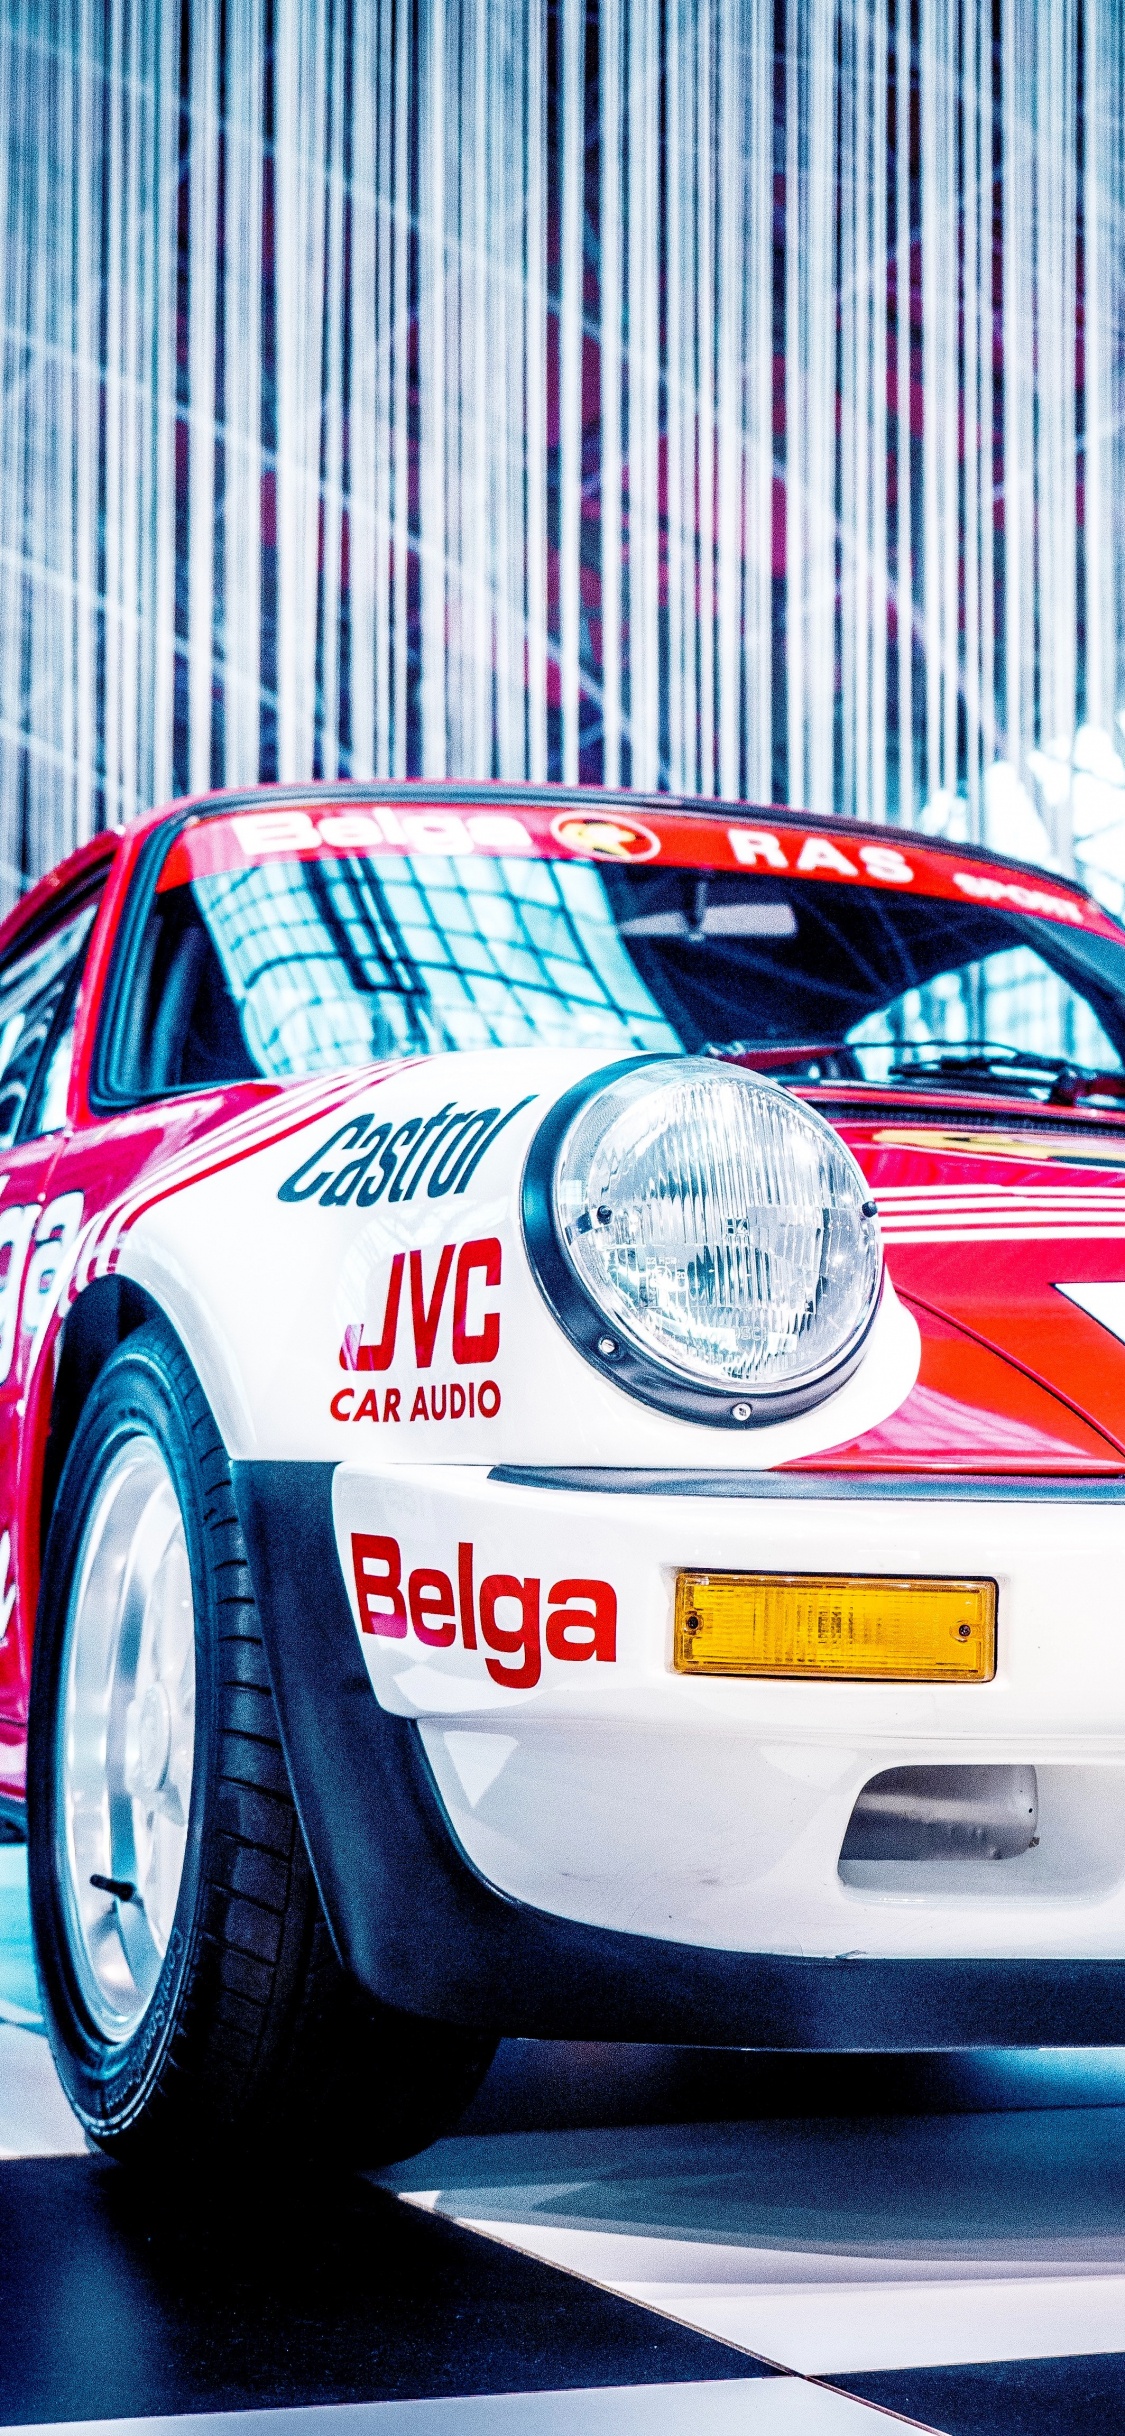 Porsche 911 Blanco y Rojo. Wallpaper in 1125x2436 Resolution